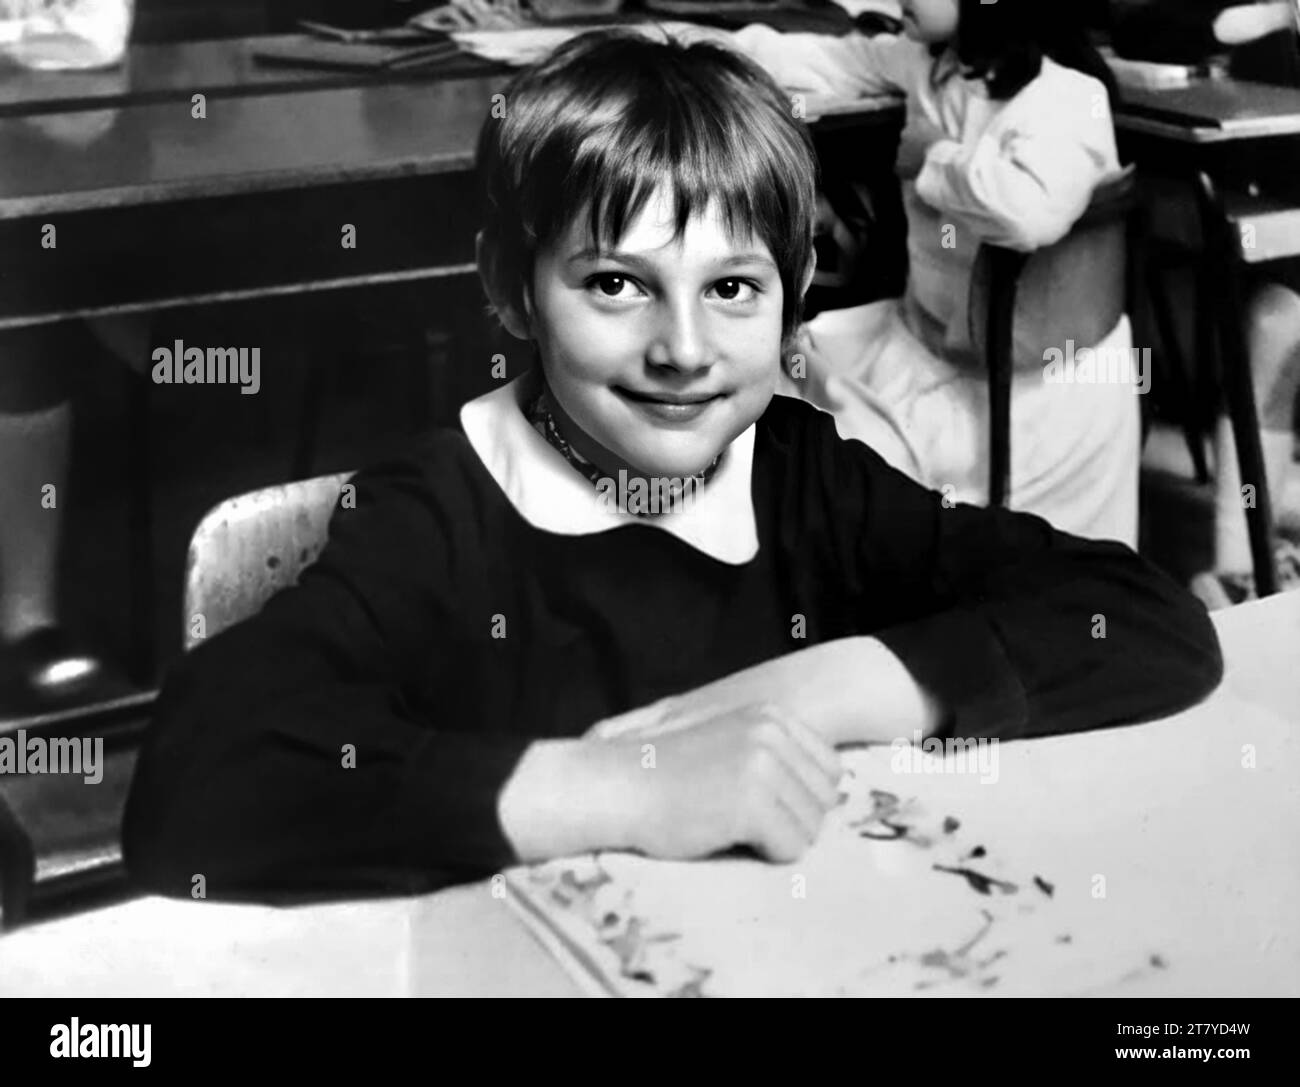 1975 c., ITALY: The italian movie director  LEONARDO PIERACCIONI ( born 17 february 1965 ) when was a young boy aged 10 at School . Unknown photographer .- HISTORY - FOTO STORICHE - REGISTA CINEMATOGRAFICO - MOVIE - CINEMA - PORTRAIT - RITRATTO - personalità da bambino bambini da giovani giovane - personality personalities when was young - INFANZIA - CHILDHOOD - TEENAGER - RAGAZZO - SCUOLA ELEMENTARE pubblica - basco scolastico - ITALIA - smile - sorriso --- ARCHIVIO GBB Stock Photo